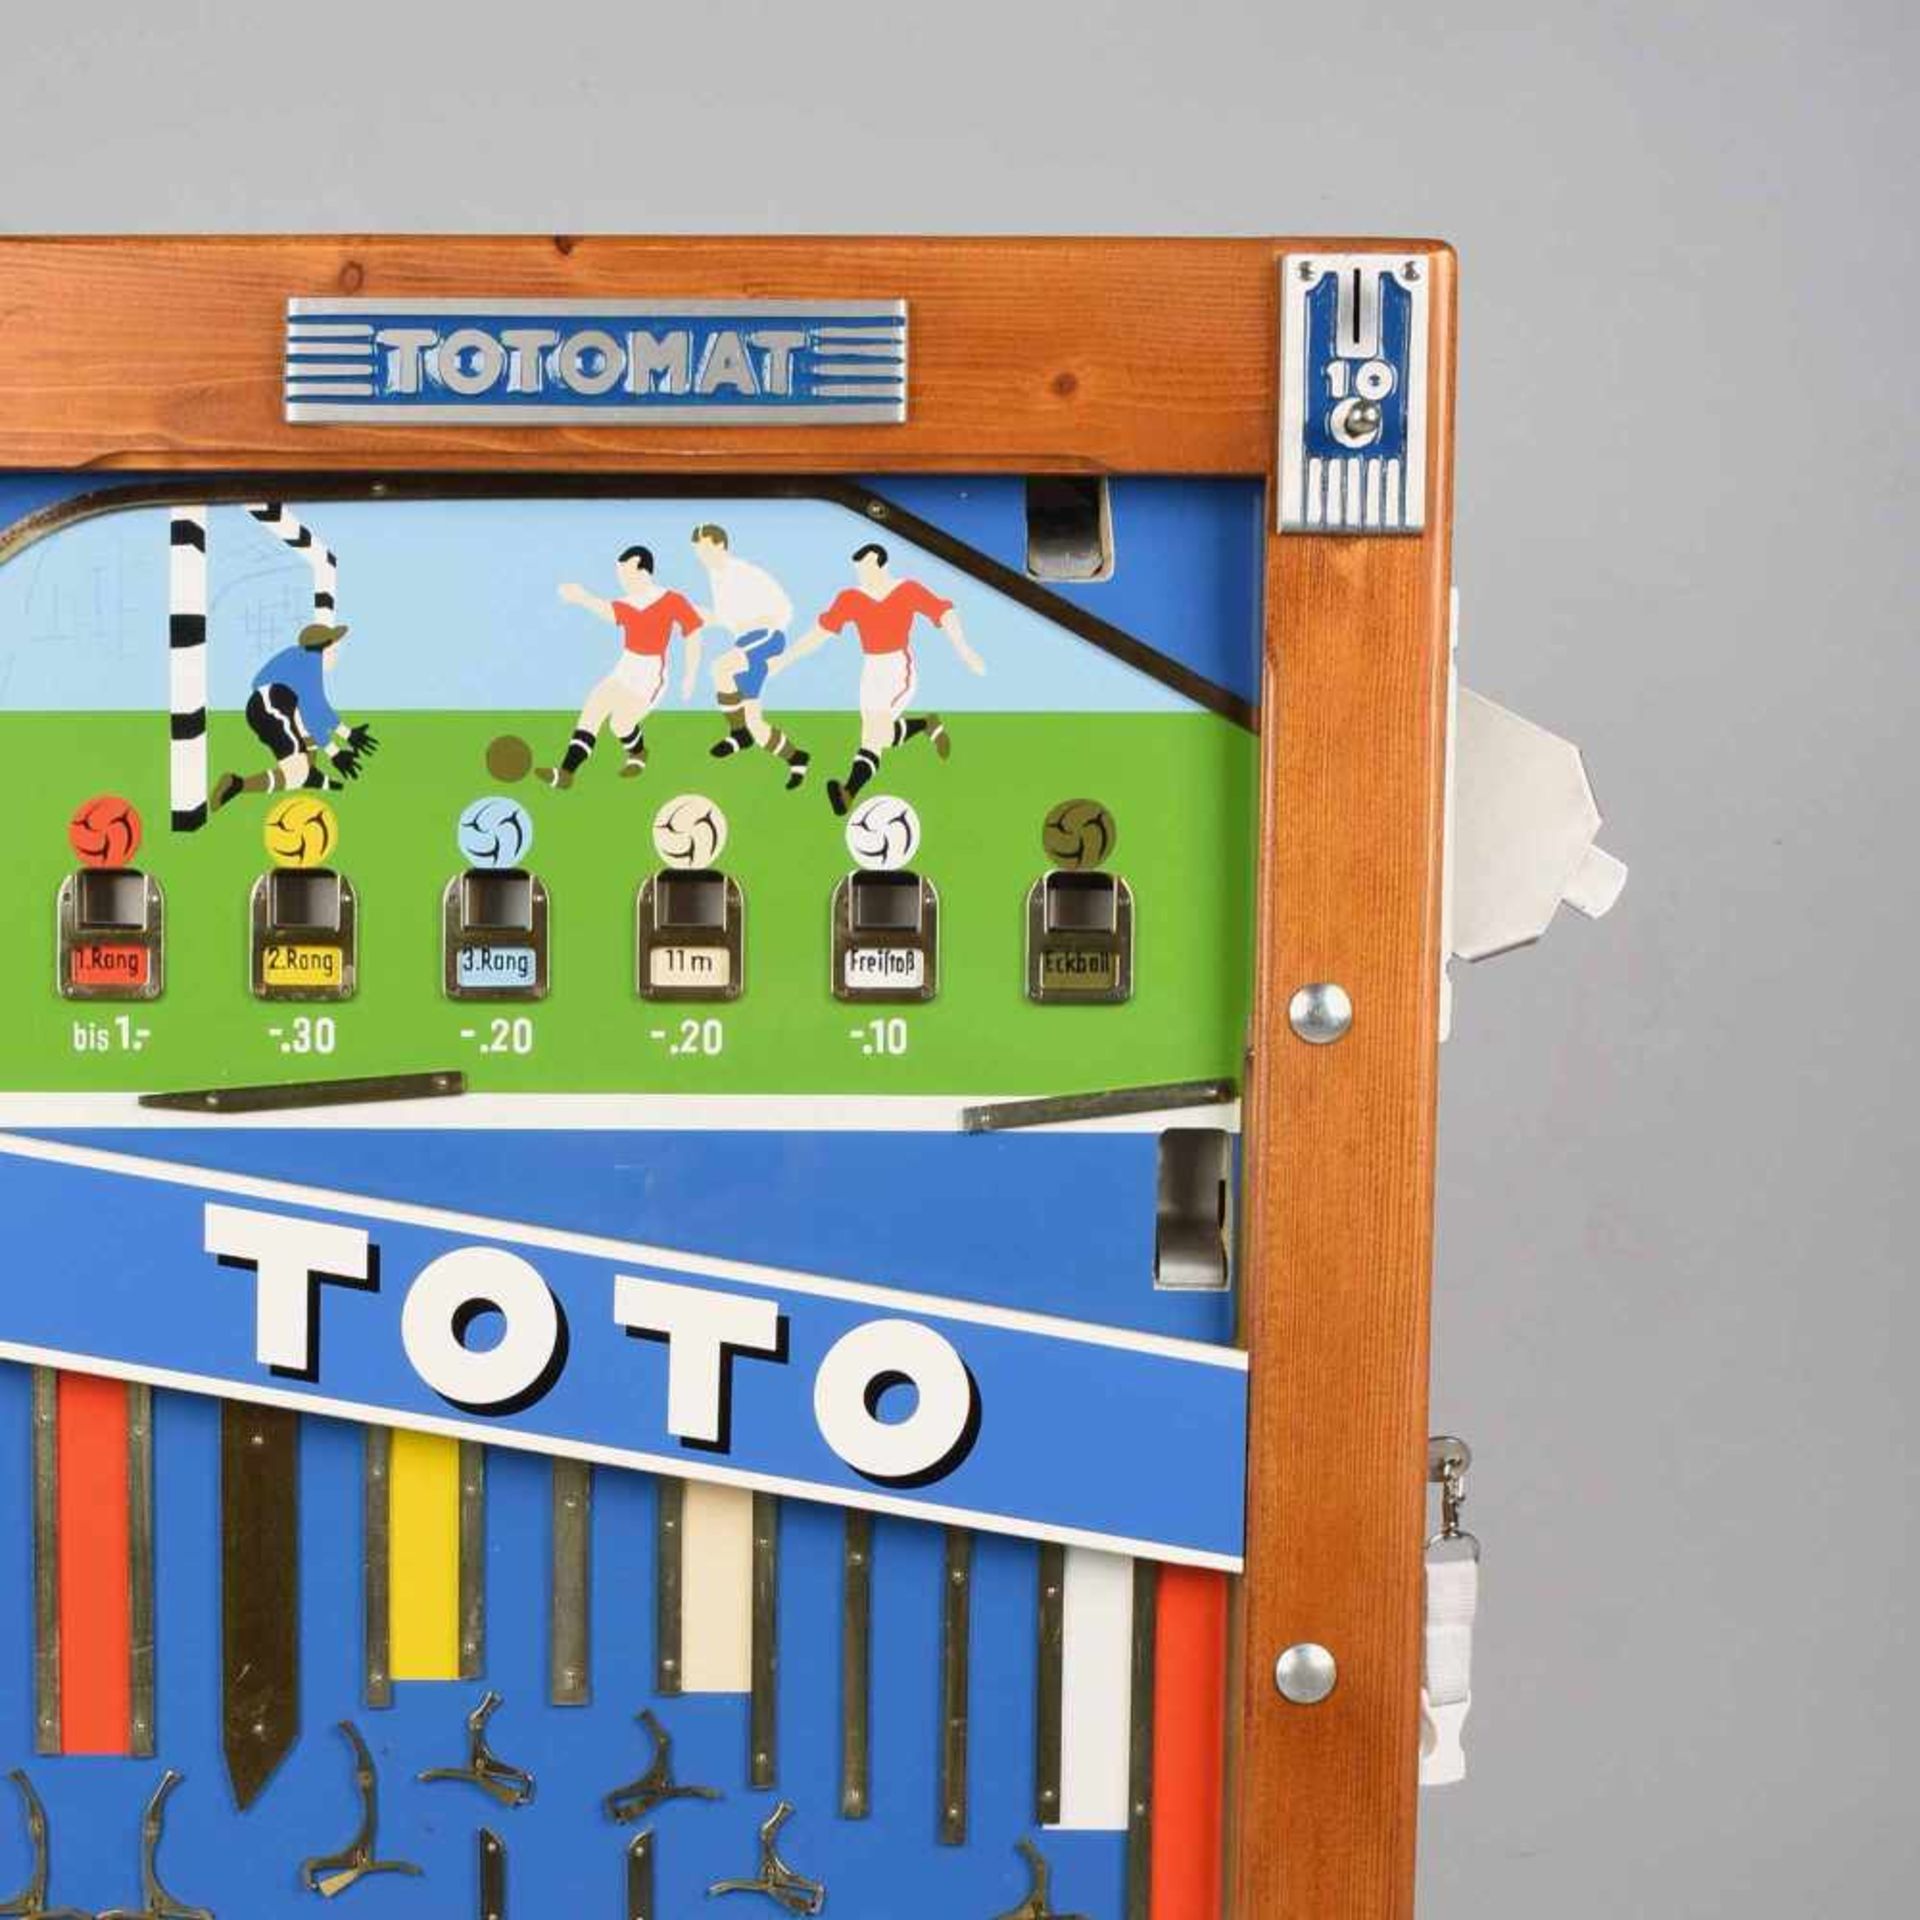 Wandspielautomat "Totomat", Holzgehäuse mit verglaster Front, Münzeinwurf, sehr gute Erhaltung,